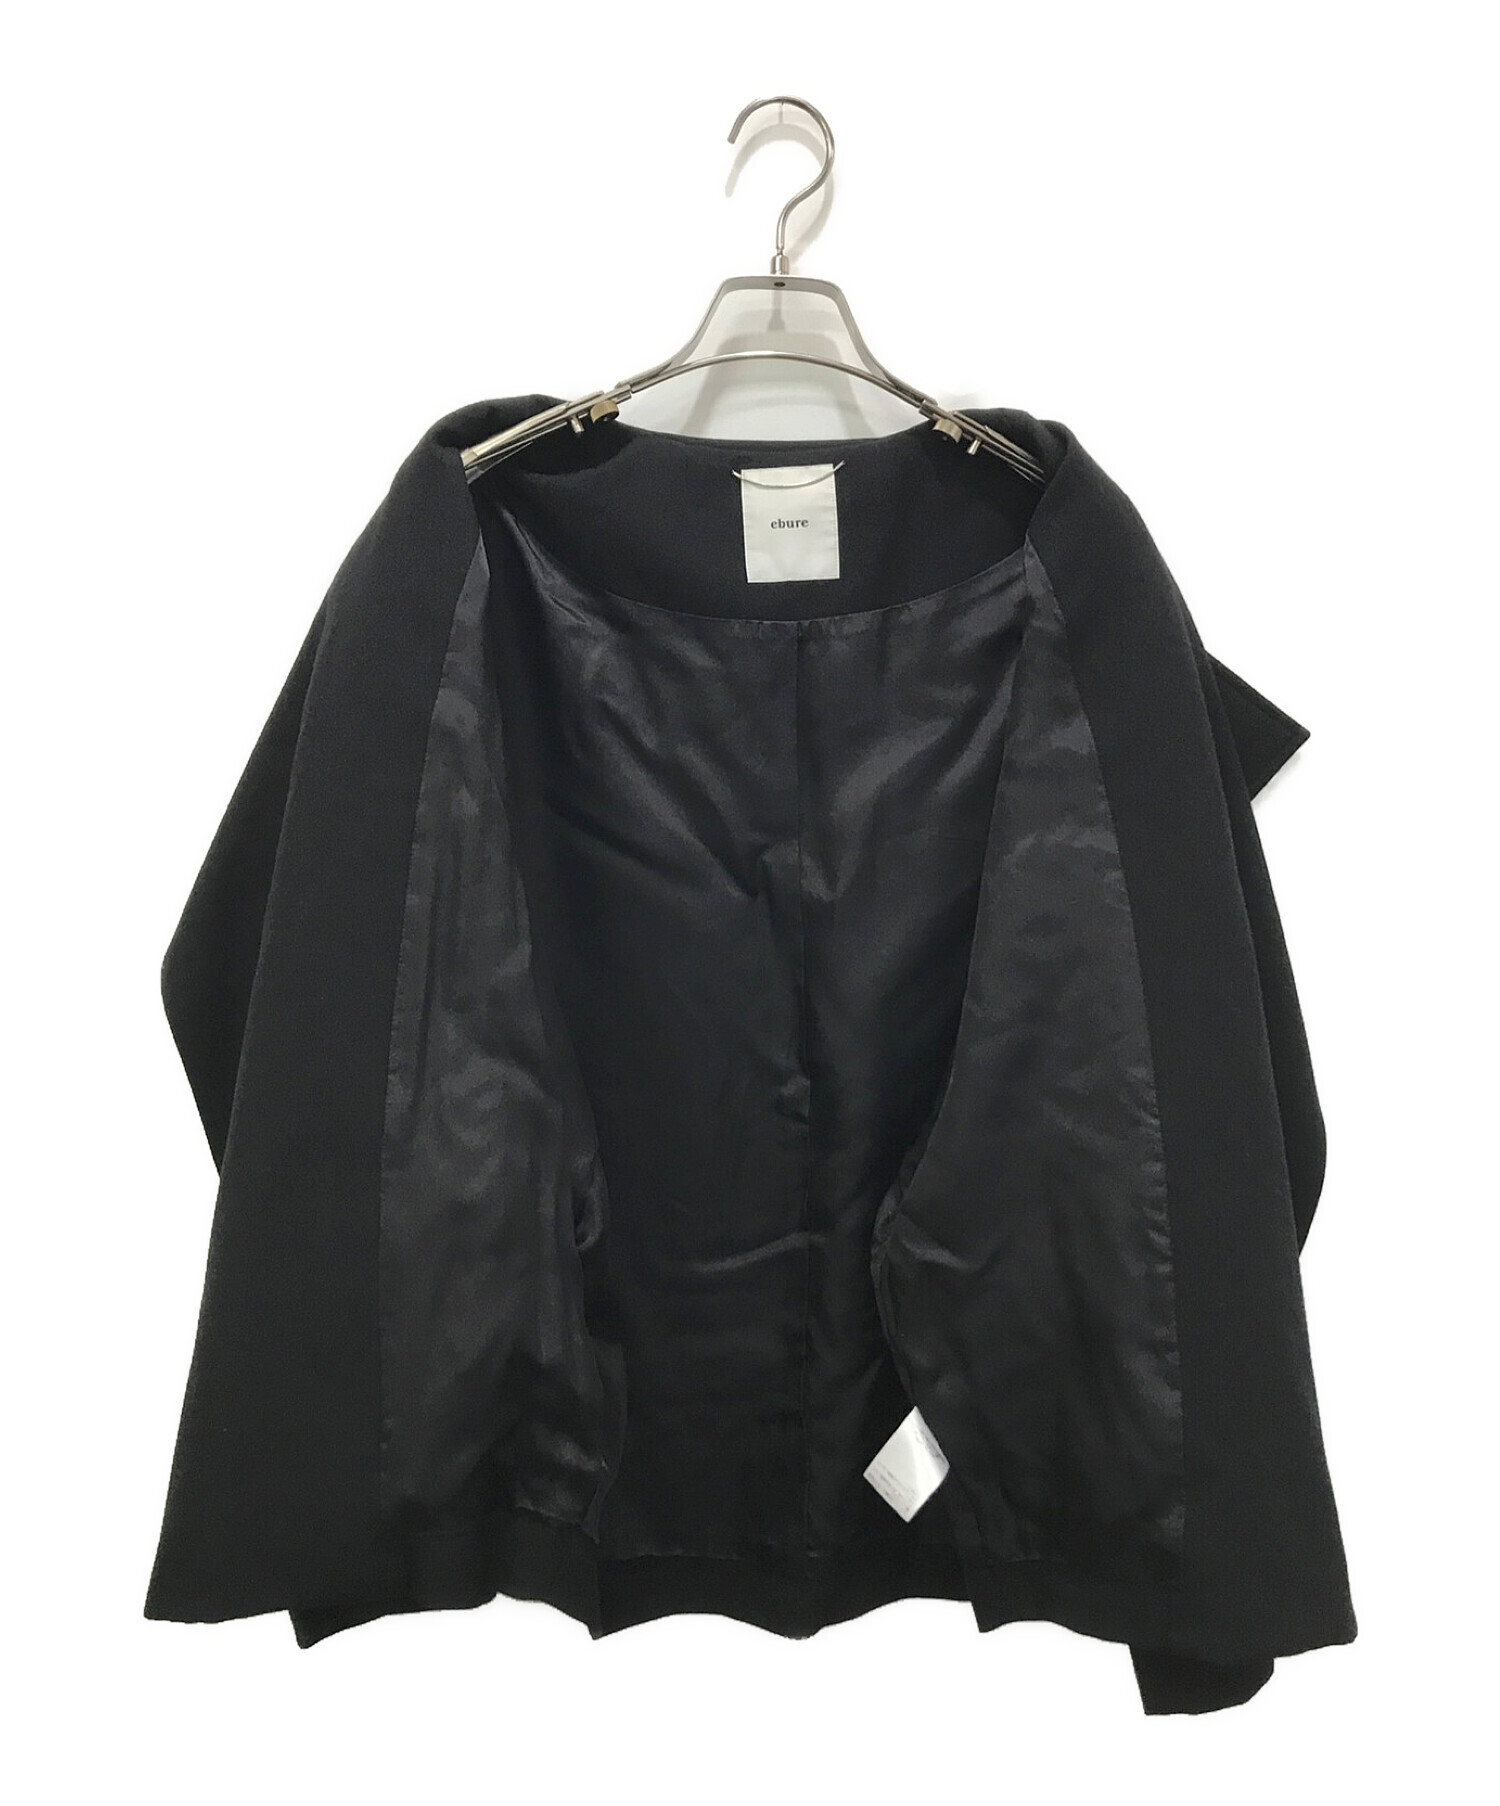 ebure (エブール) ノーカラージャケット ブラック サイズ:36